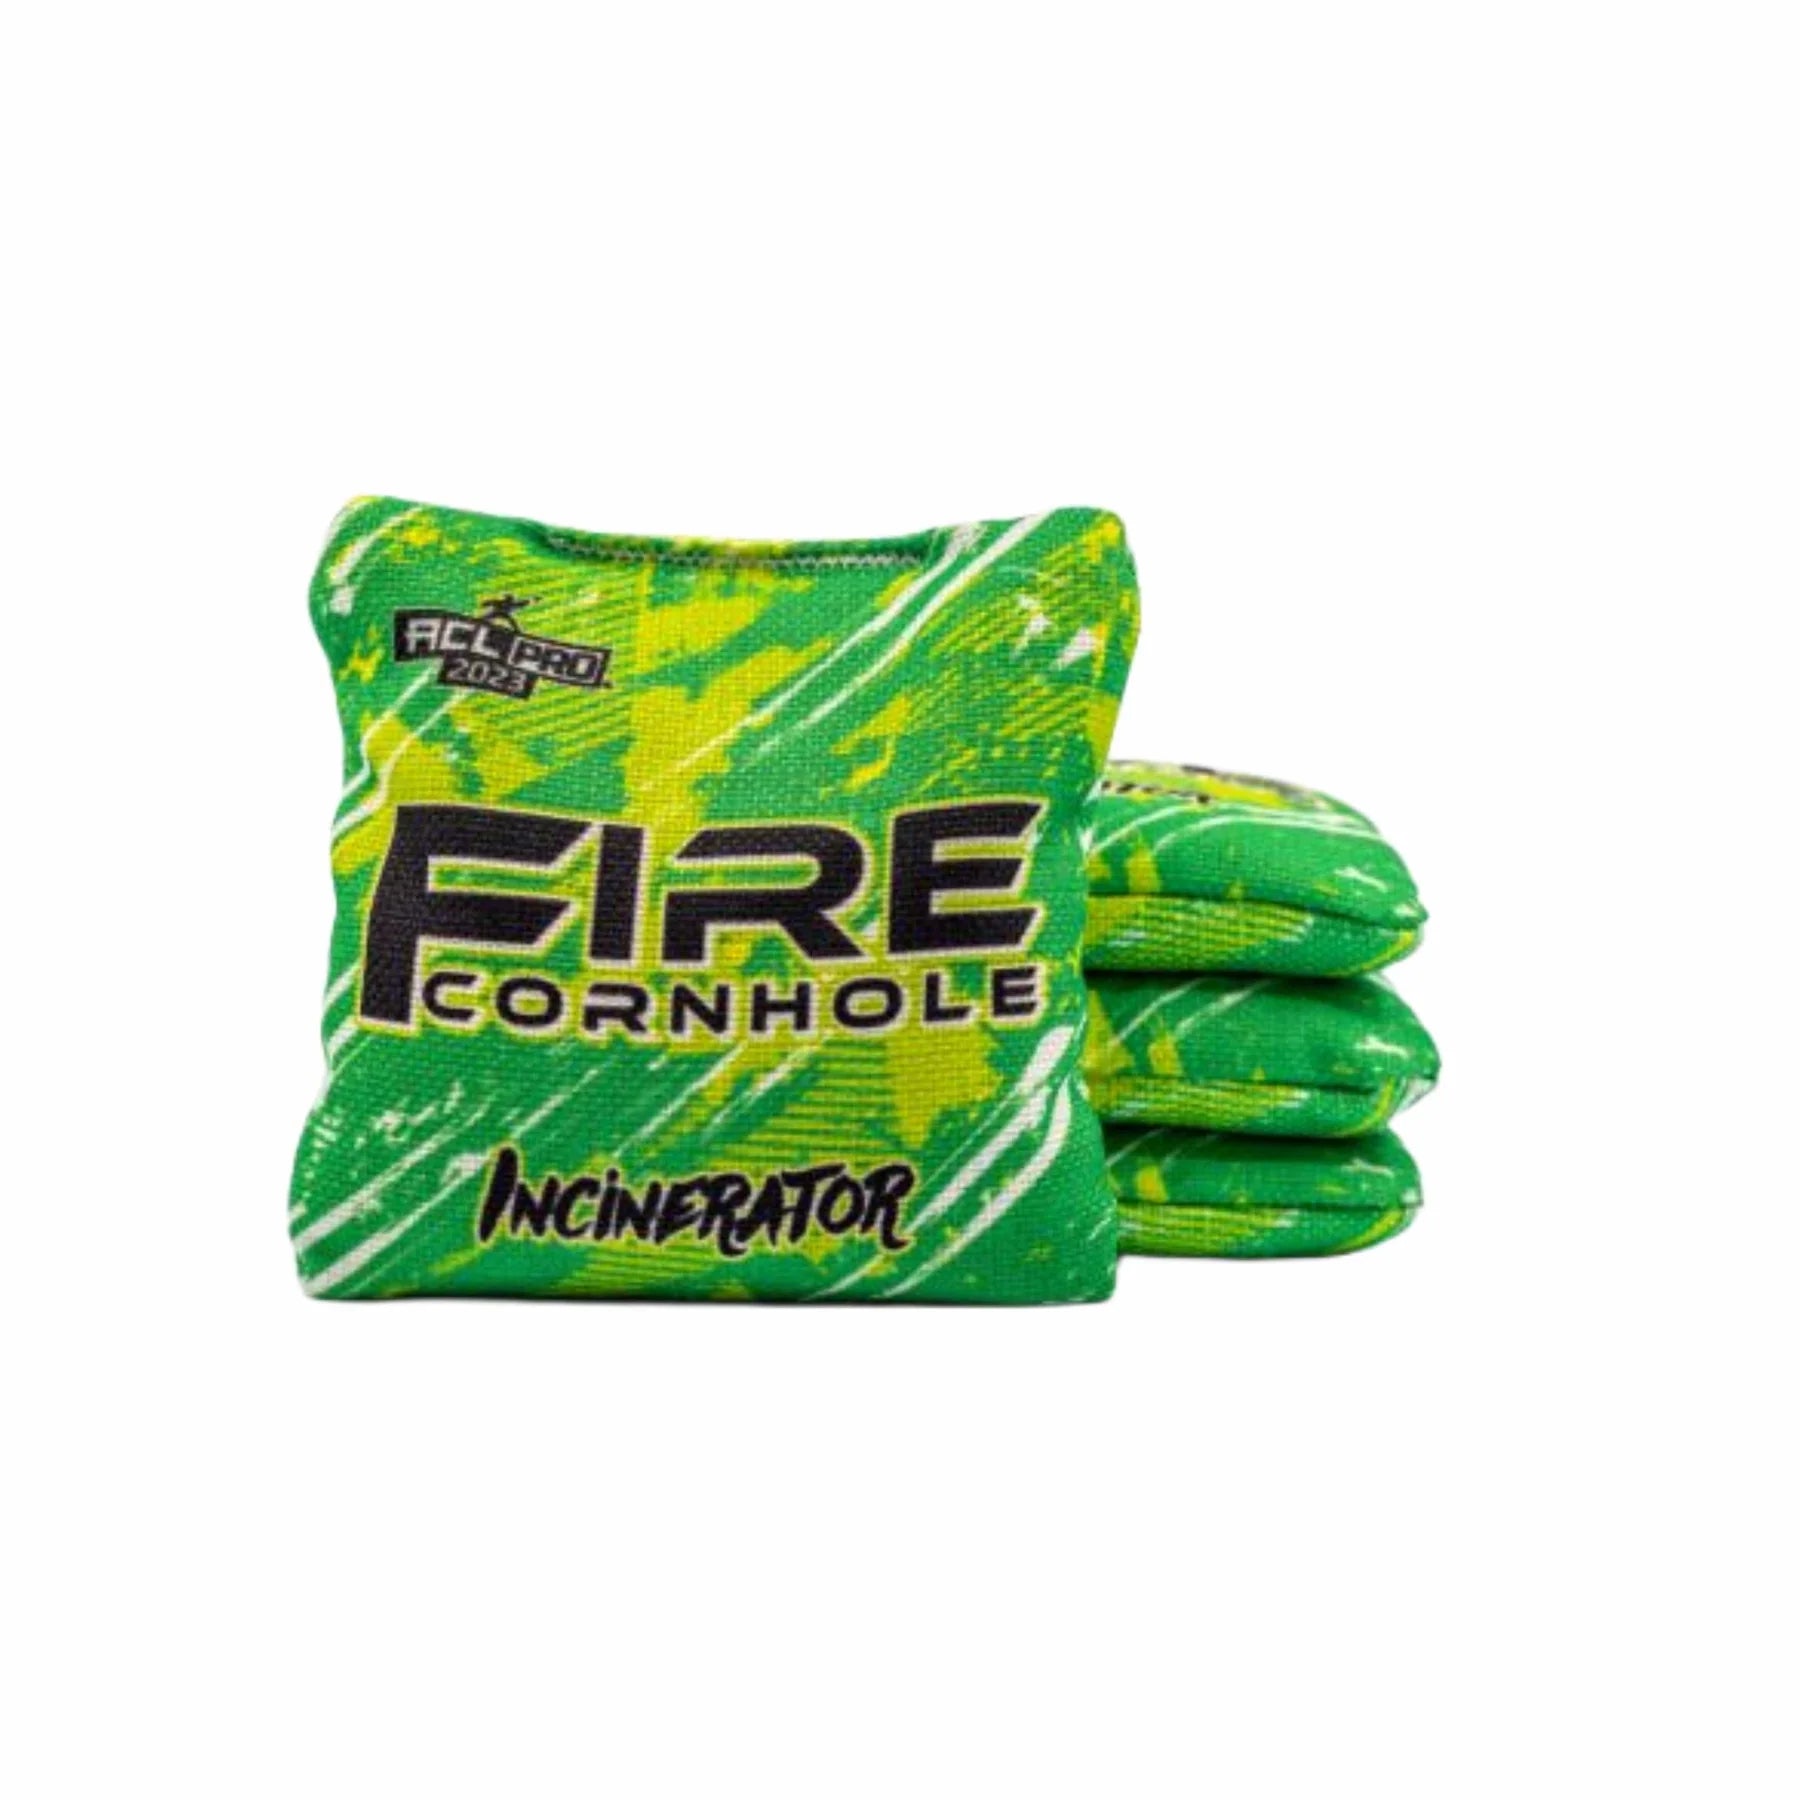 Fire Incinerator 2023 - 1x4 Cornhole bags